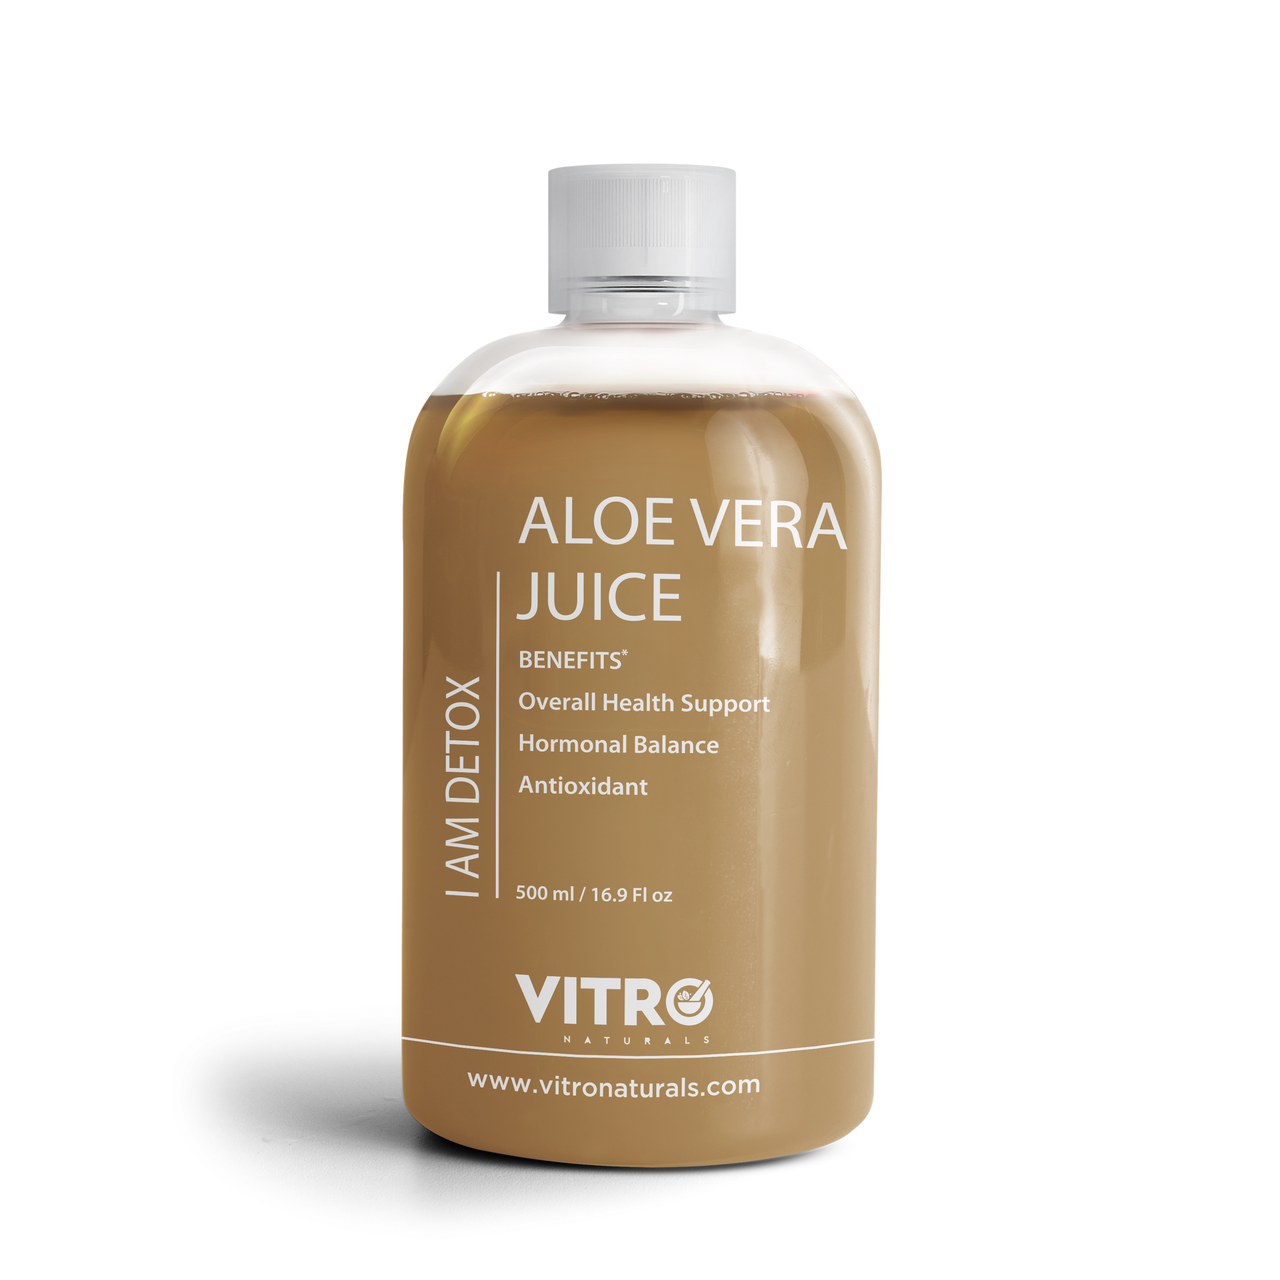 Vitro Naturals Aloe Vera Juice I Am Detox - Distacart